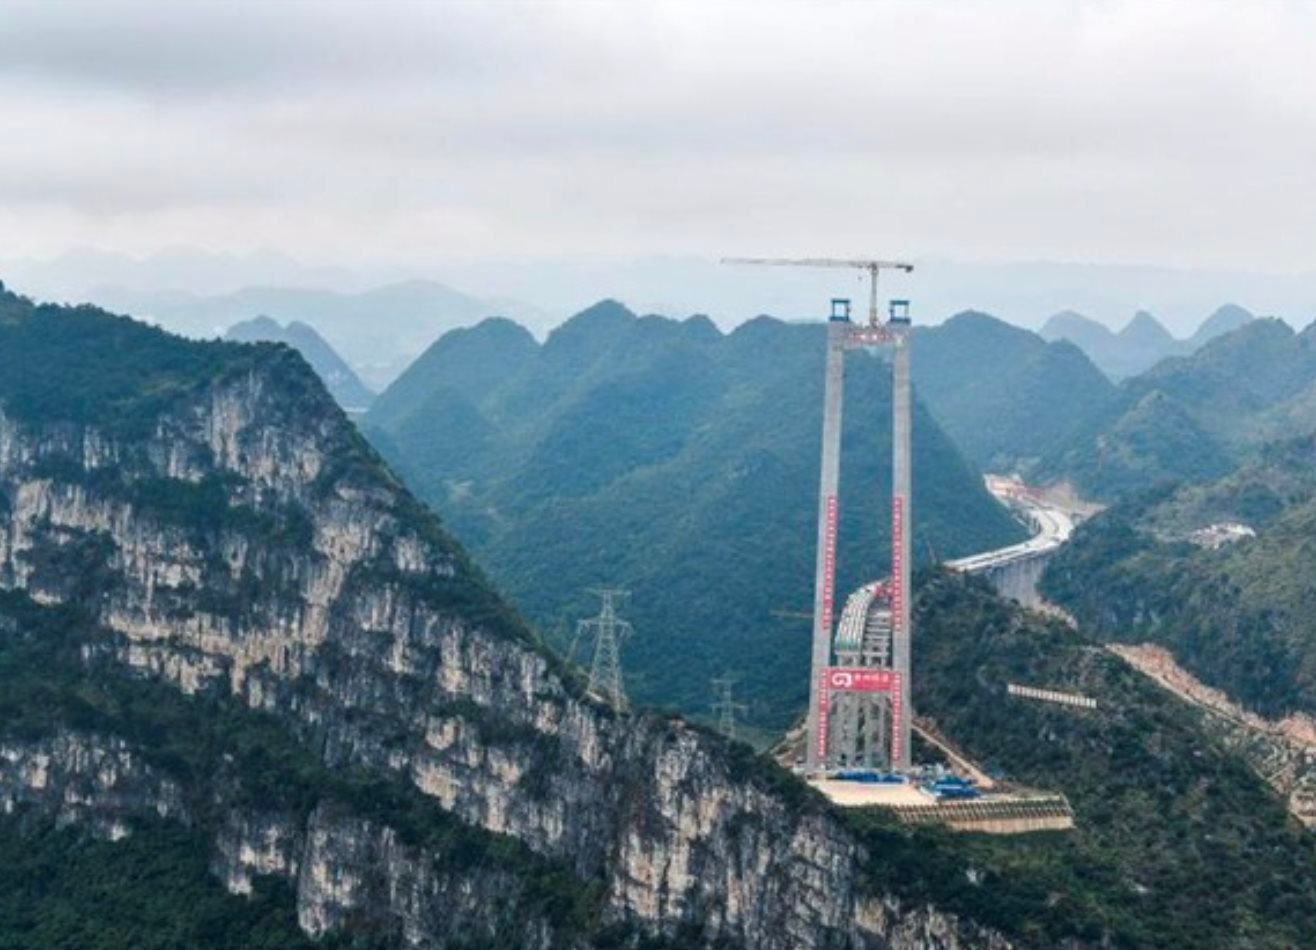 Tỉnh thuộc top nghèo nhất Trung Quốc: Sở hữu 30.000 cây cầu băng qua núi cao vài trăm mét, chi phí xây dựng ‘sương sương’ 3-5 nghìn tỷ đồng, sắp khánh thành cầu cao nhất thế giới- Ảnh 4.